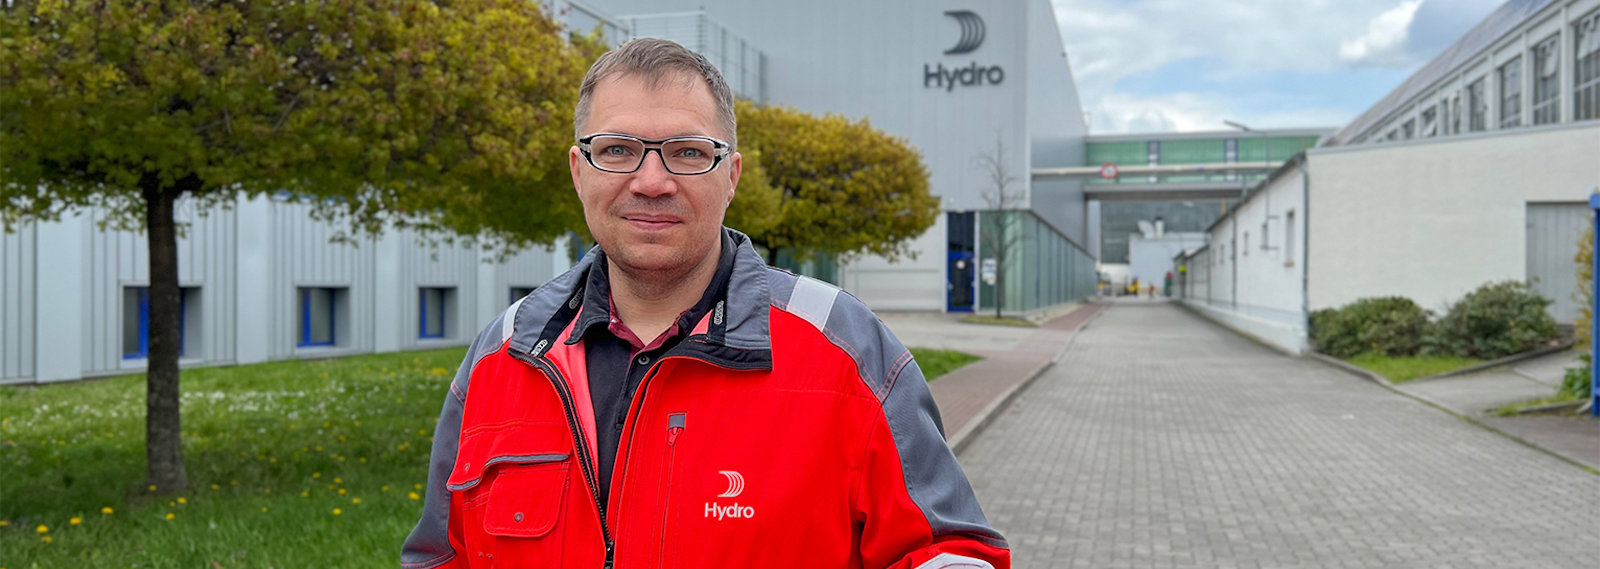 Christian Keller auf dem Werkgelände von Hydro Extrusion Rackwitz